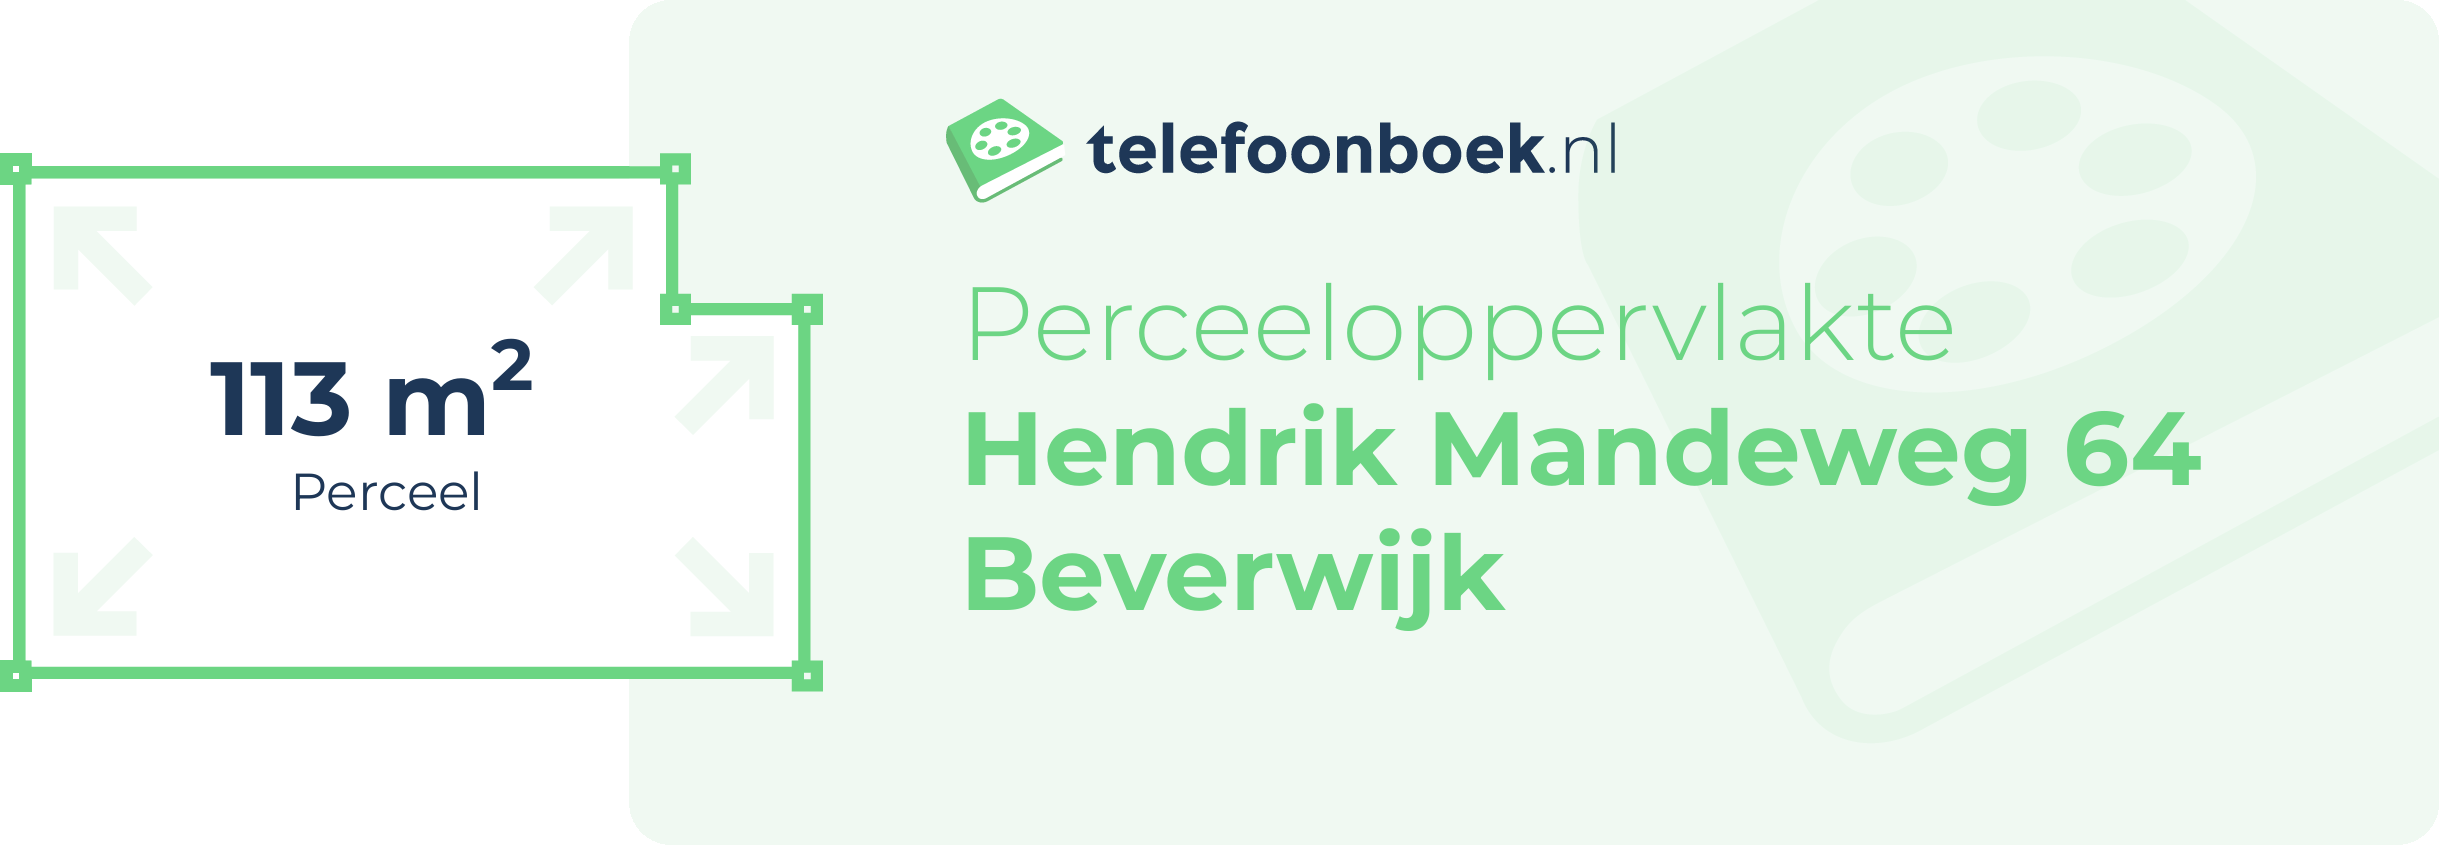 Perceeloppervlakte Hendrik Mandeweg 64 Beverwijk